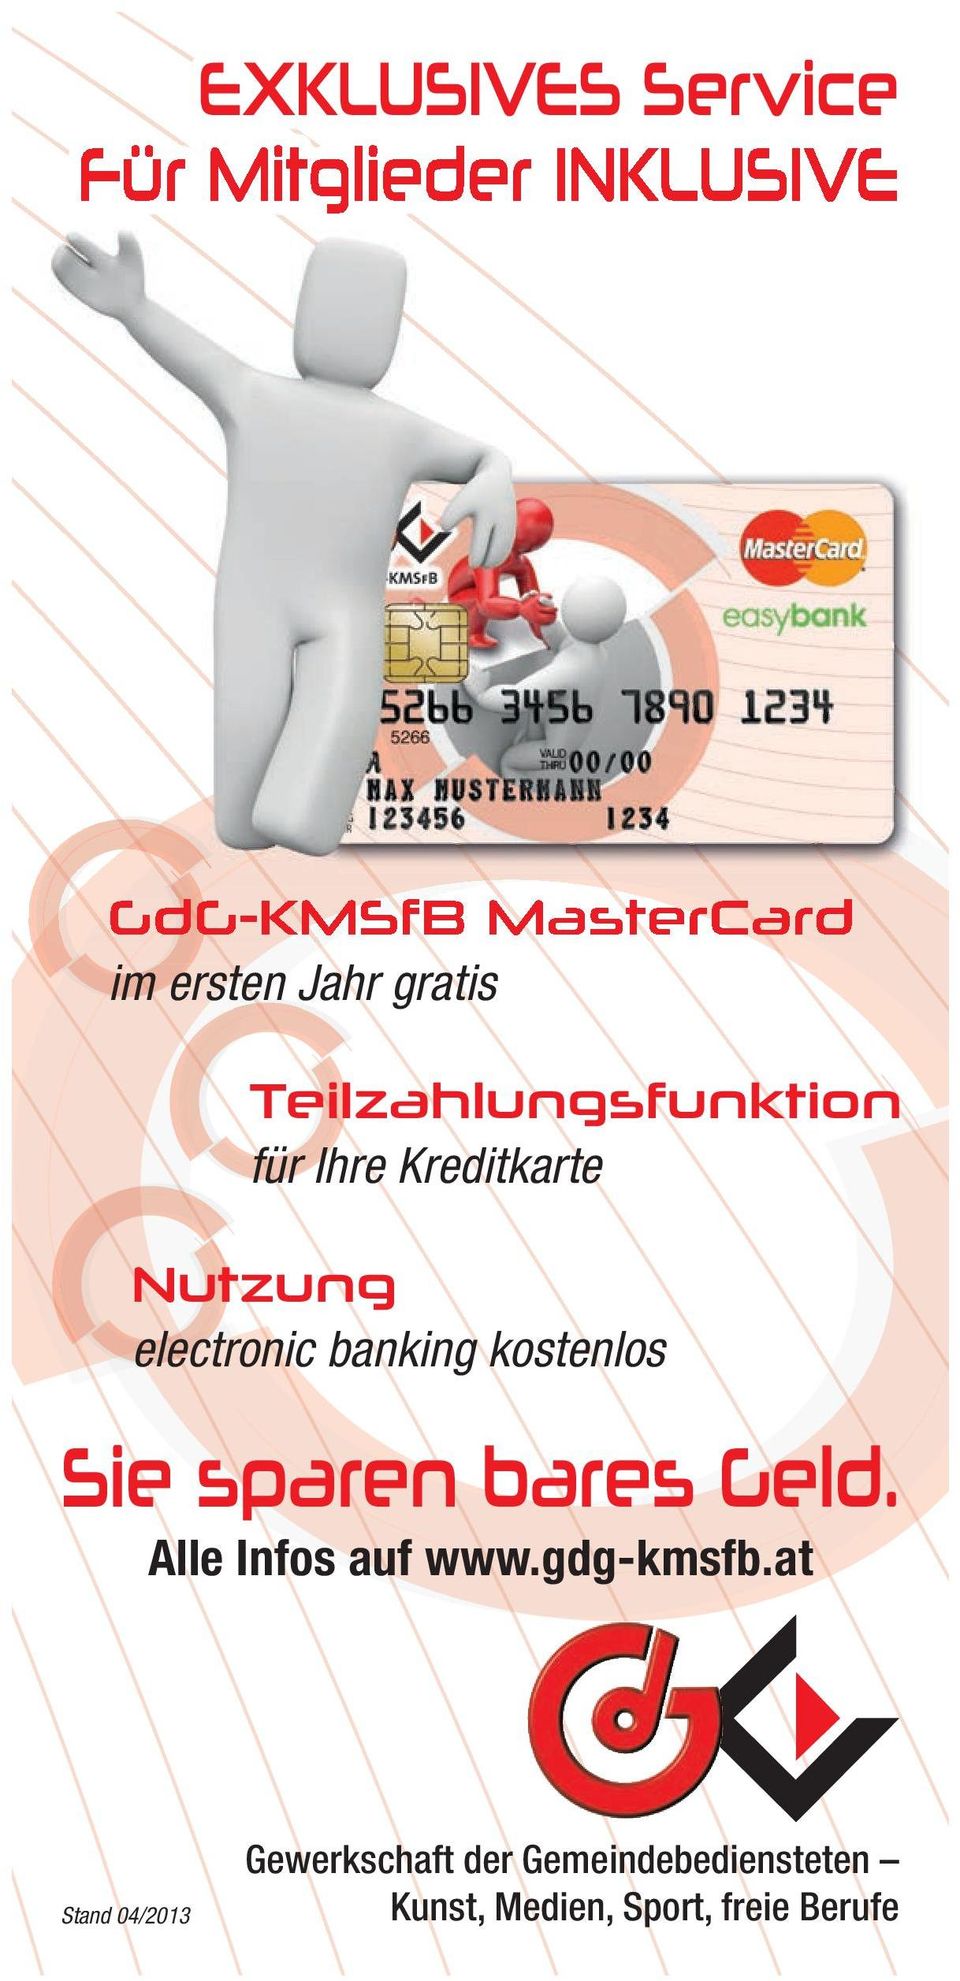 banking kostenlos Sie sparen bares Geld. Alle Infos auf www.gdg-kmsfb.